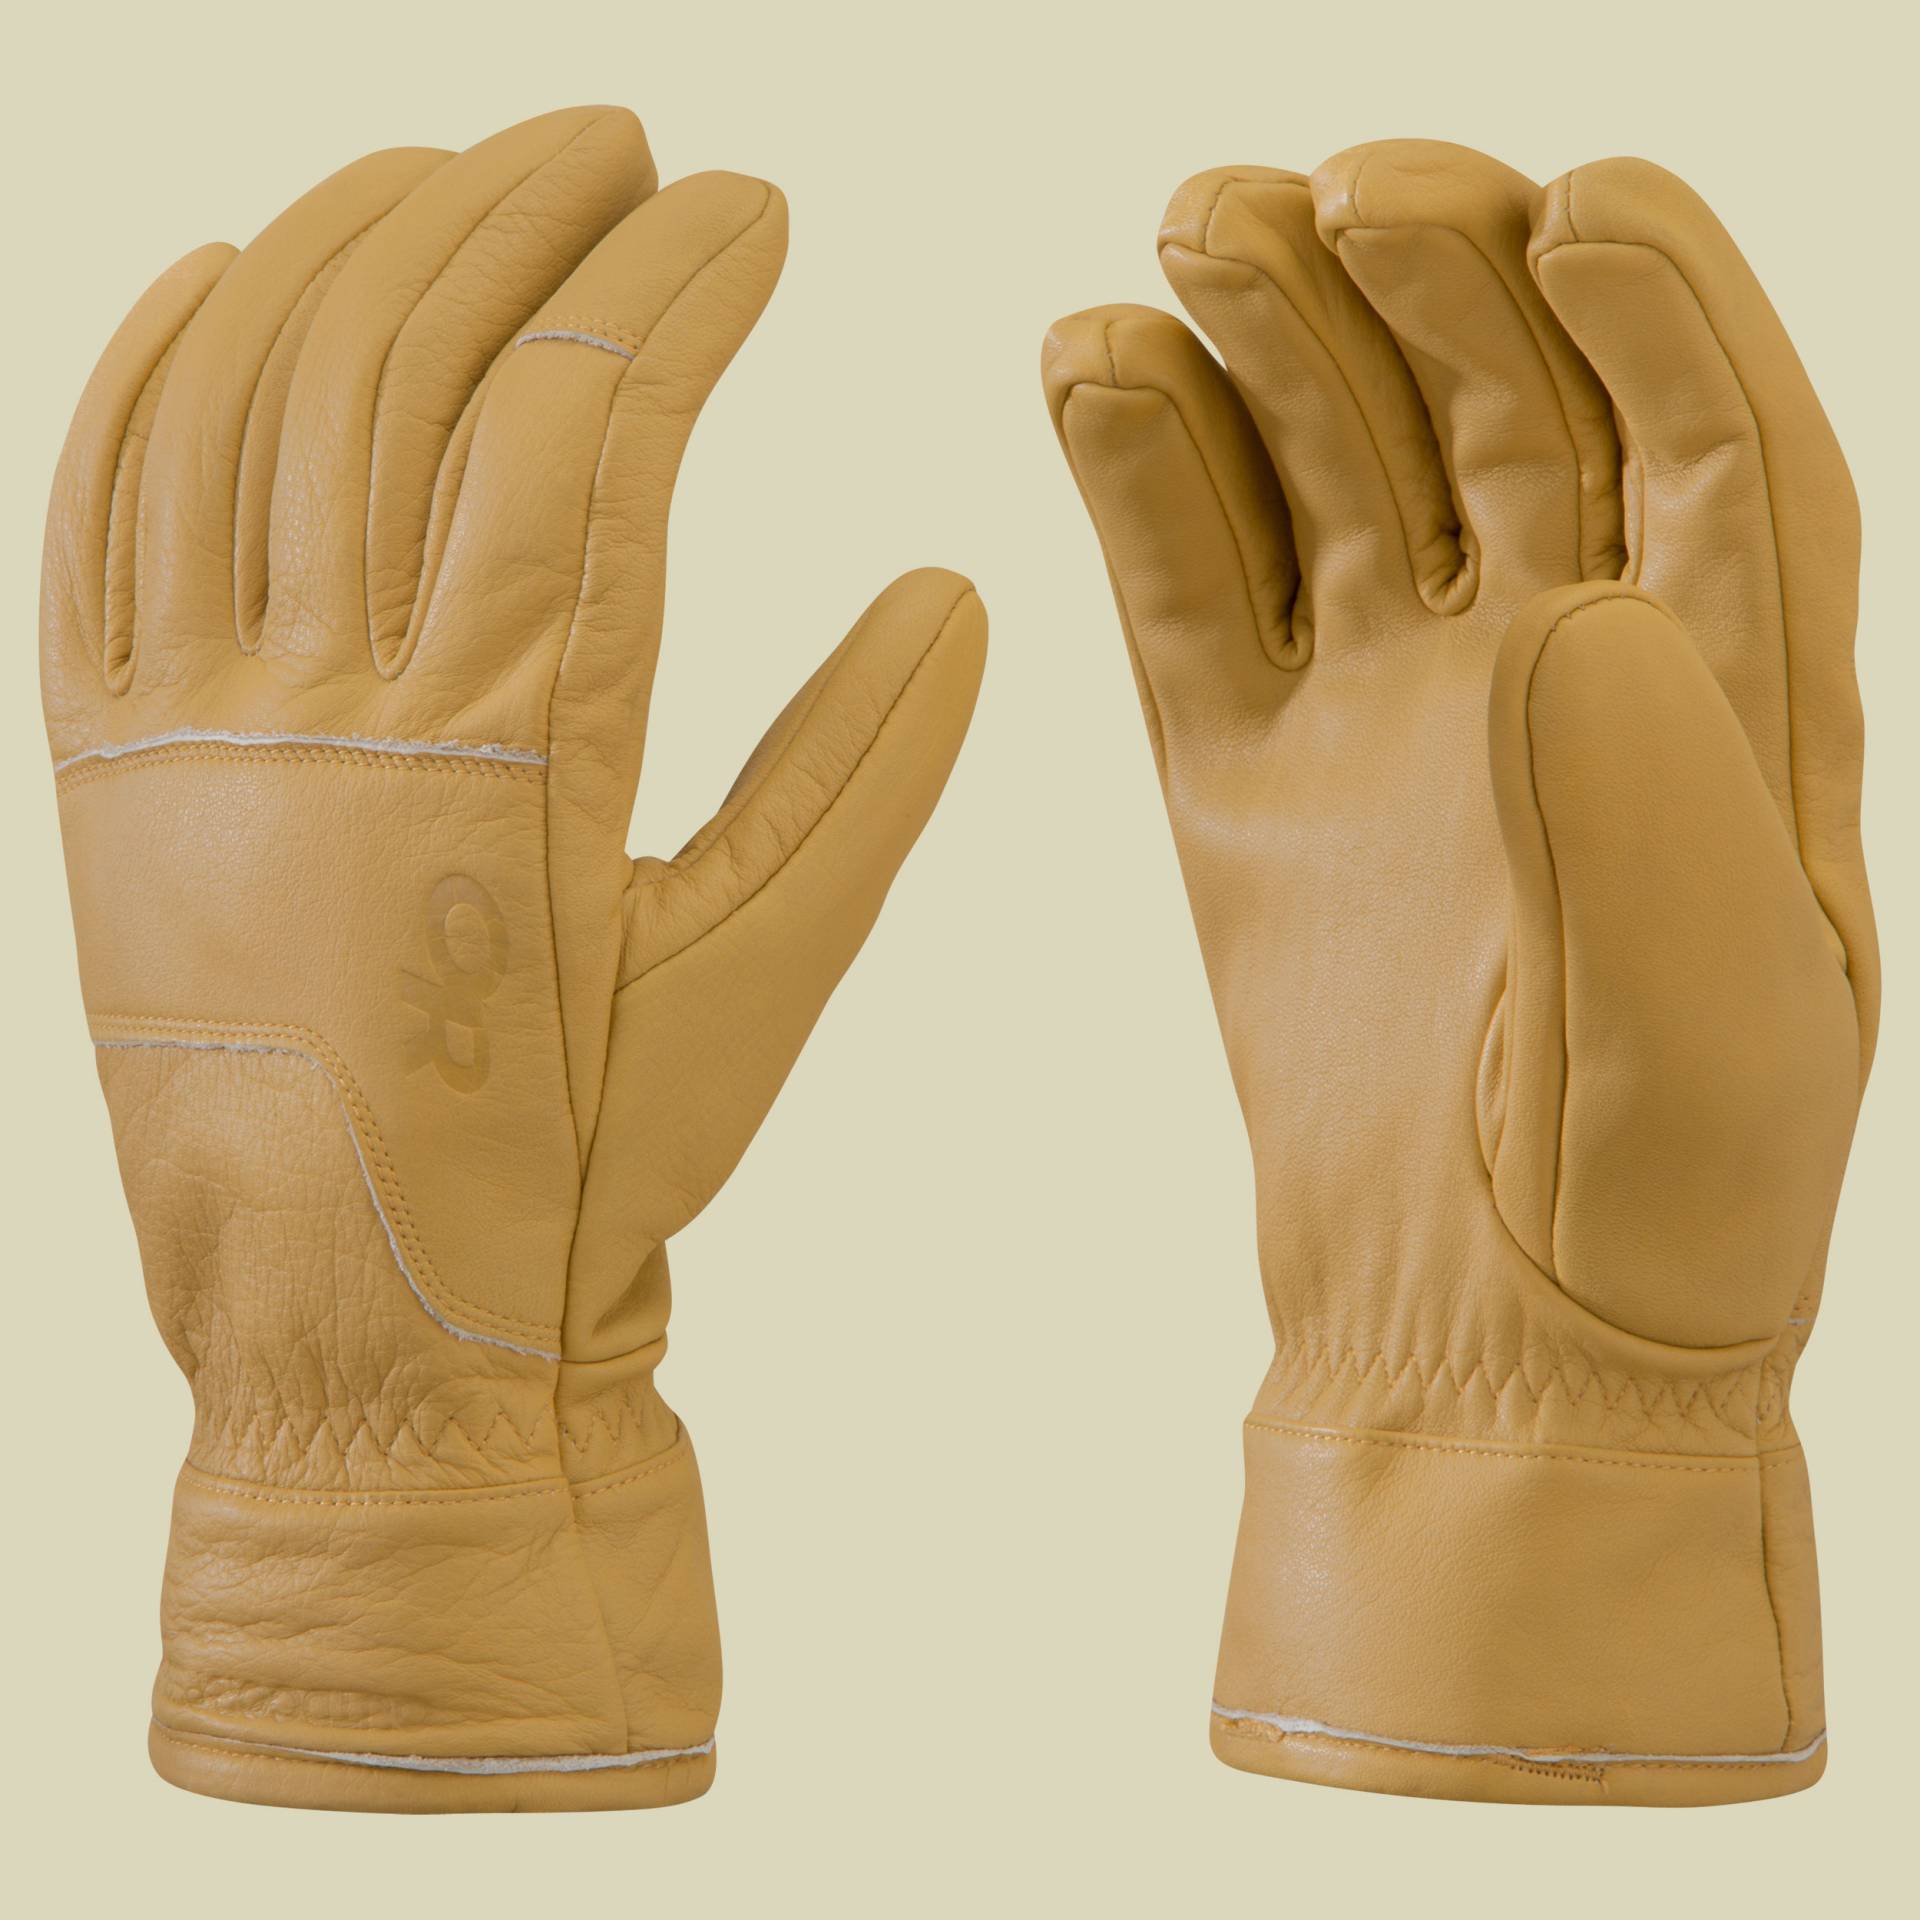 Aksel Work Gloves Größe S Farbe natural von Outdoor Research